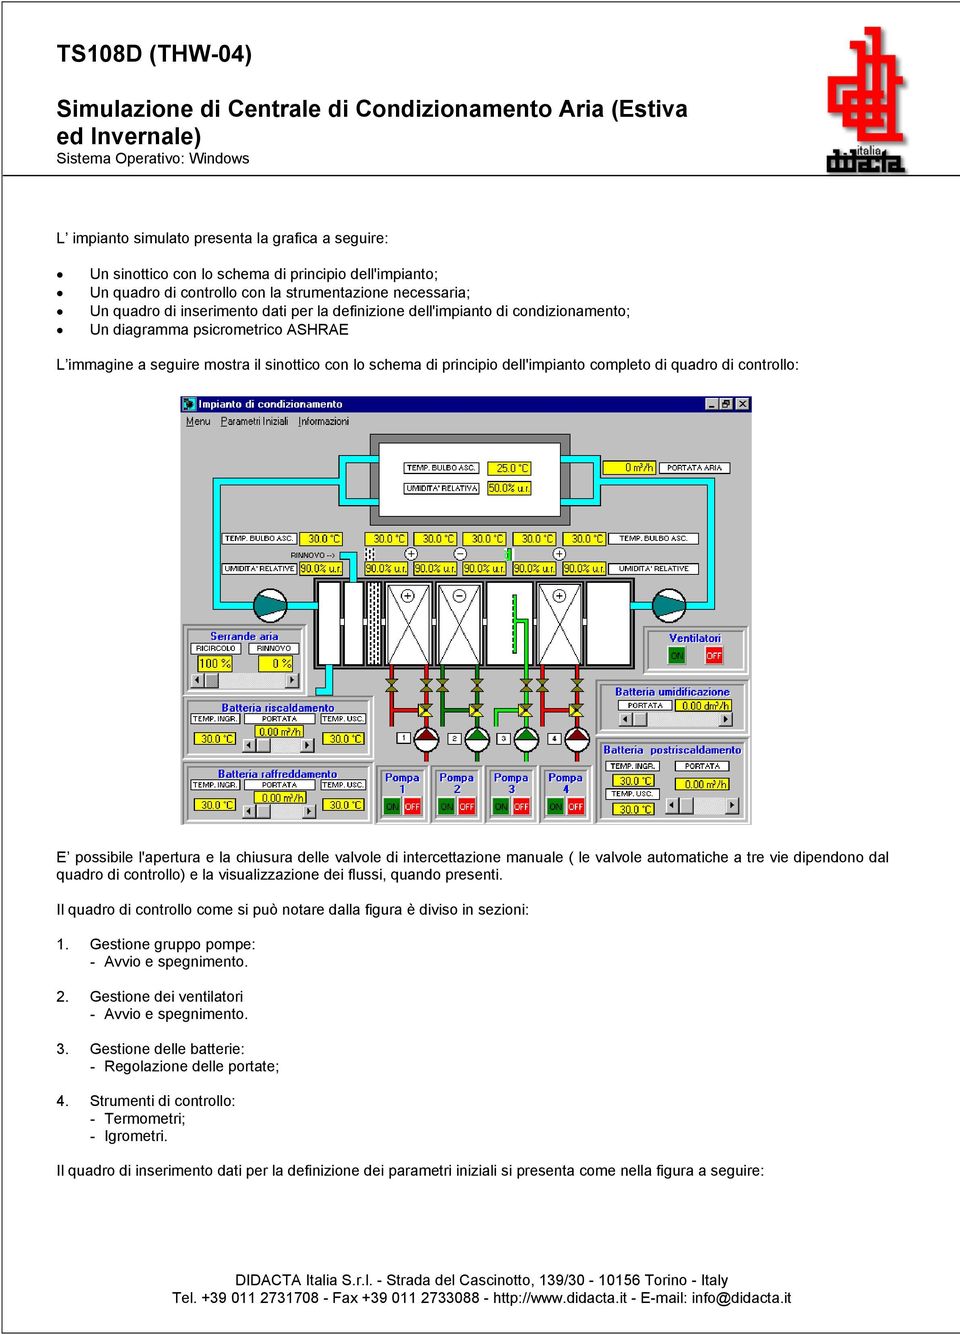 L immagine a seguire mostra il sinottico con lo schema di principio dell'impianto completo di quadro di controllo: E possibile l'apertura e la chiusura delle valvole di intercettazione manuale ( le